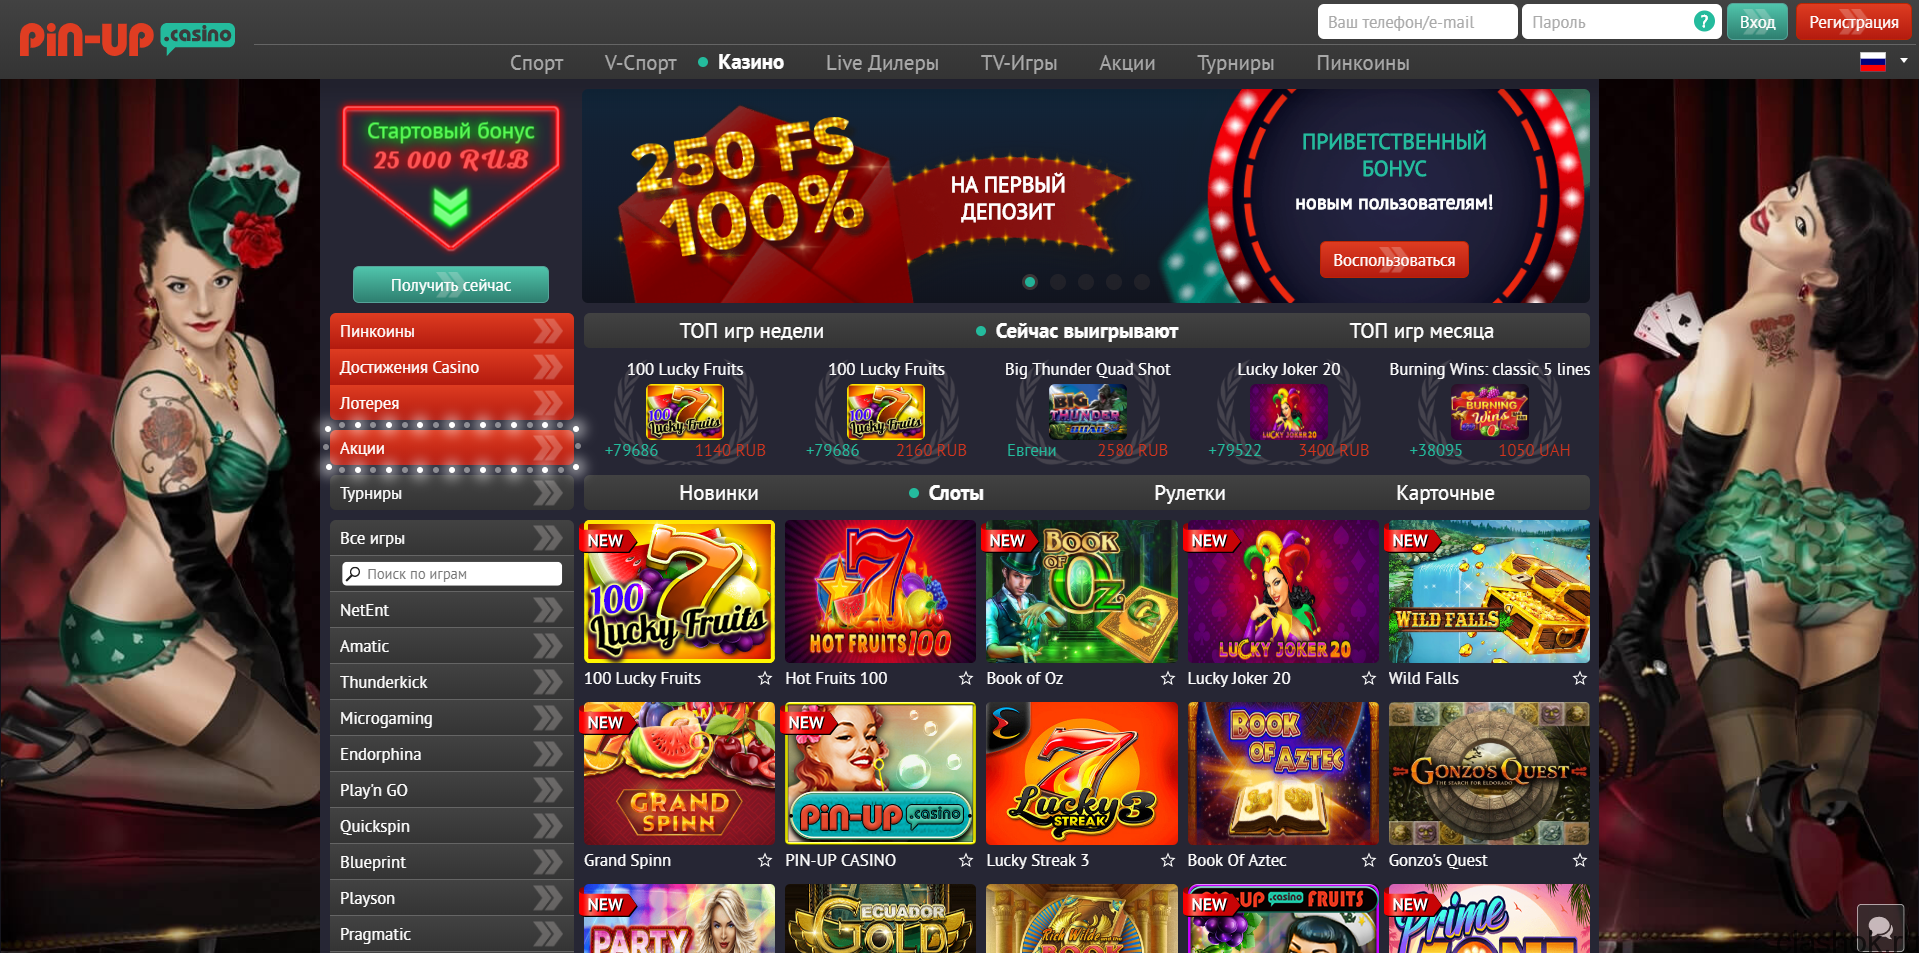 Casino pin up net как работают слоты в онлайн казино